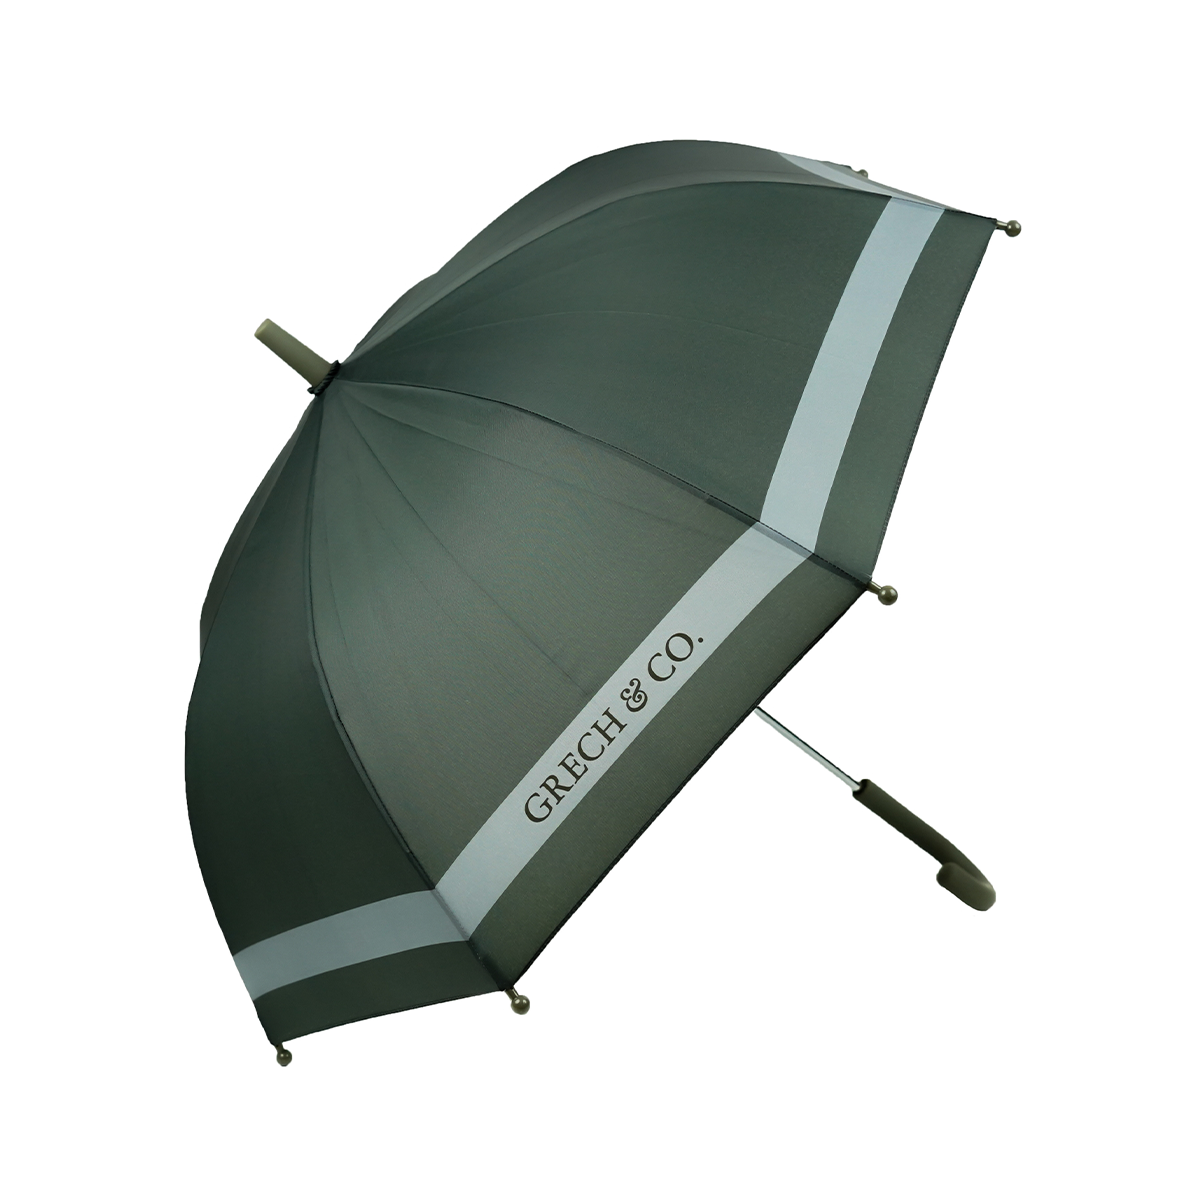 Grech & Co. paraplu adult storm fogTrotseer op een stijlvolle manier de regen met deze Grech & Co. adult storm fog paraplu. Deze leuke paraplu combineert functionaliteit met stijl, en de mooie blauwgrijze kleur voegt een vleugje vrolijkheid toe aan grijze regendagen. VanZus